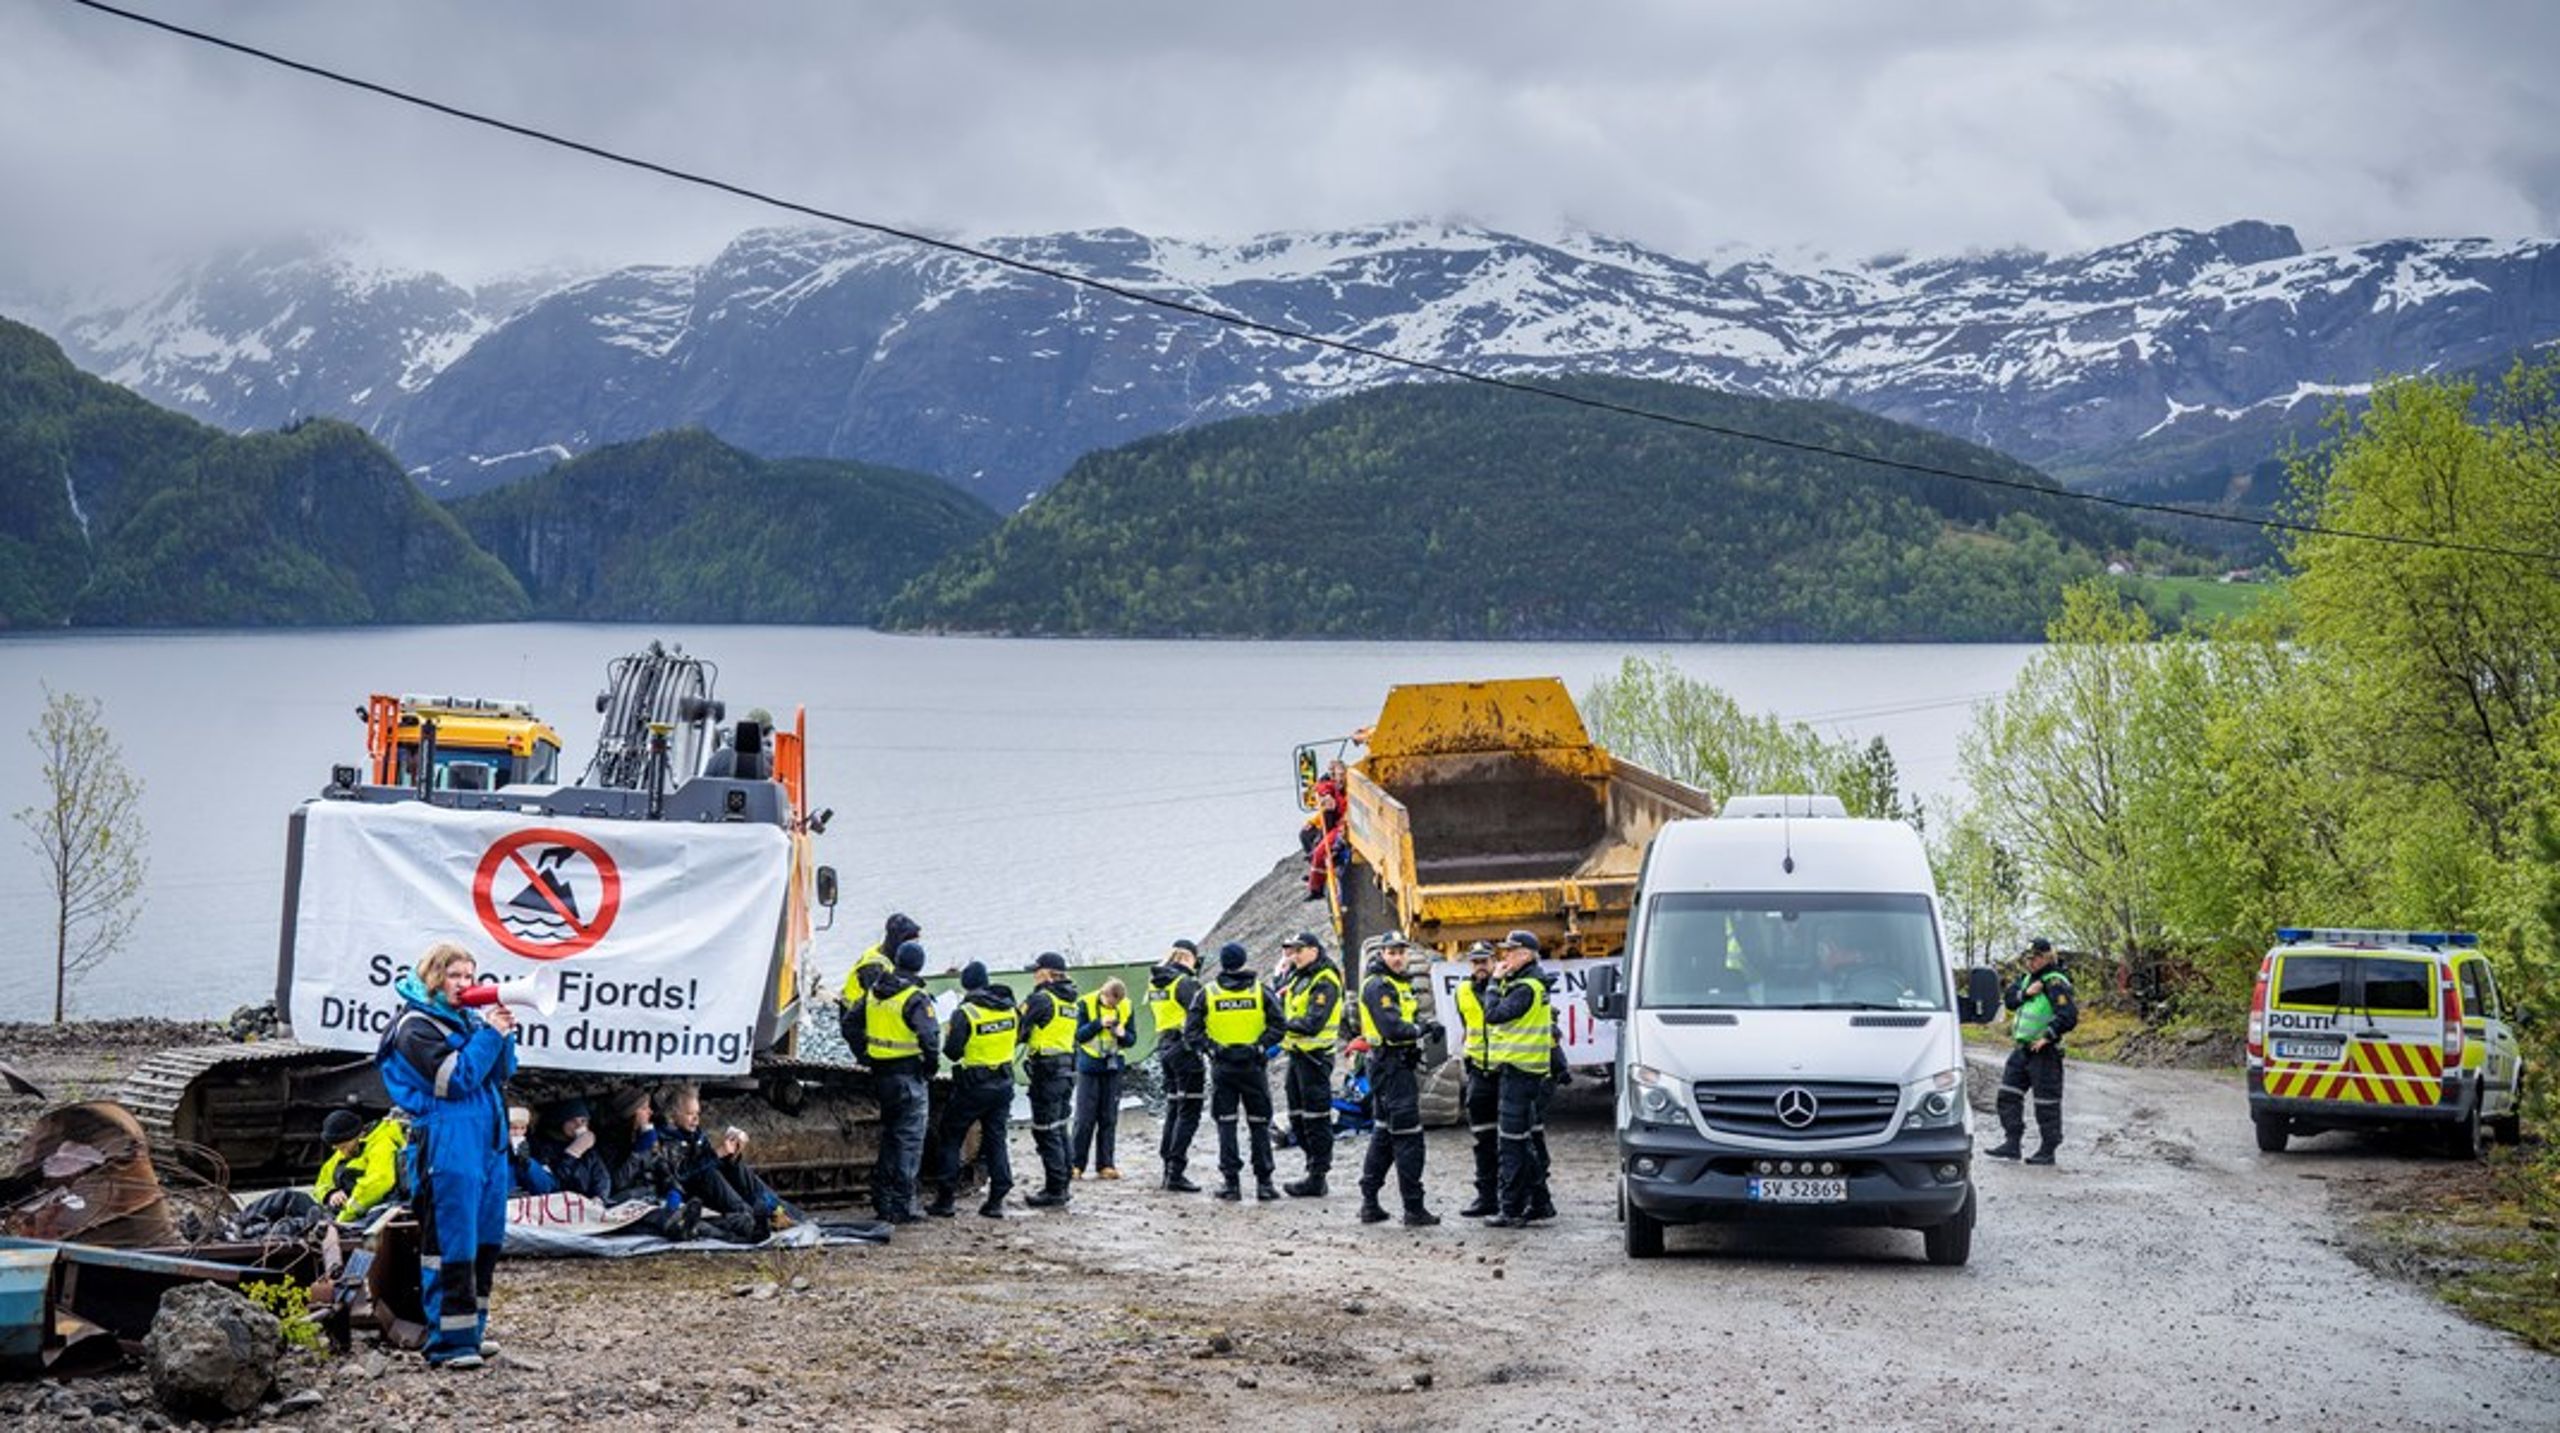 I 2022 demonstrerte aksjonister ved å lenke seg fast i protest&nbsp;mot et gruveprosjekt som skulle deponere gruveavfall i Førdefjorden. Slike protester vil vi sannsynligvis se flere av i årene som kommer, i takt med økt interesse for norske mineraler.&nbsp;